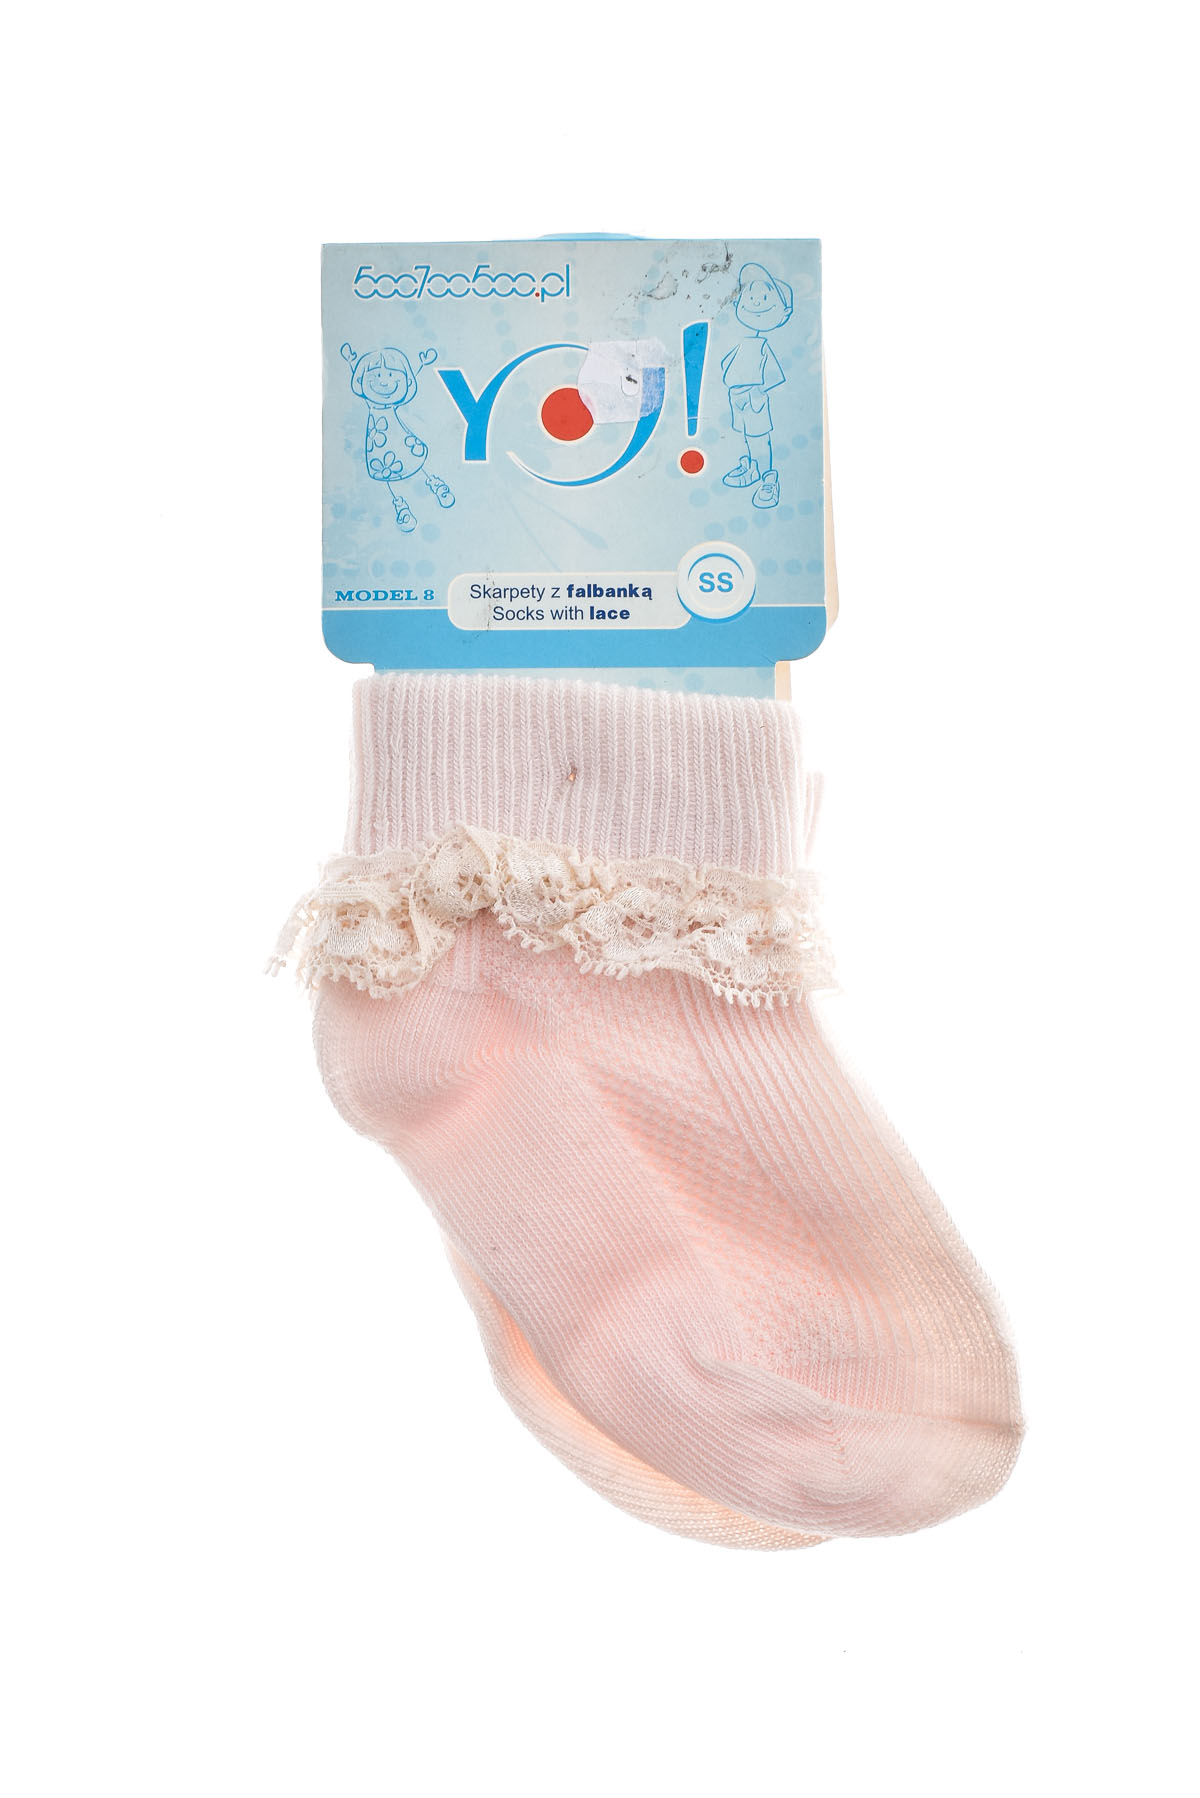 Παιδικές κάλτσες - YO! club - 1